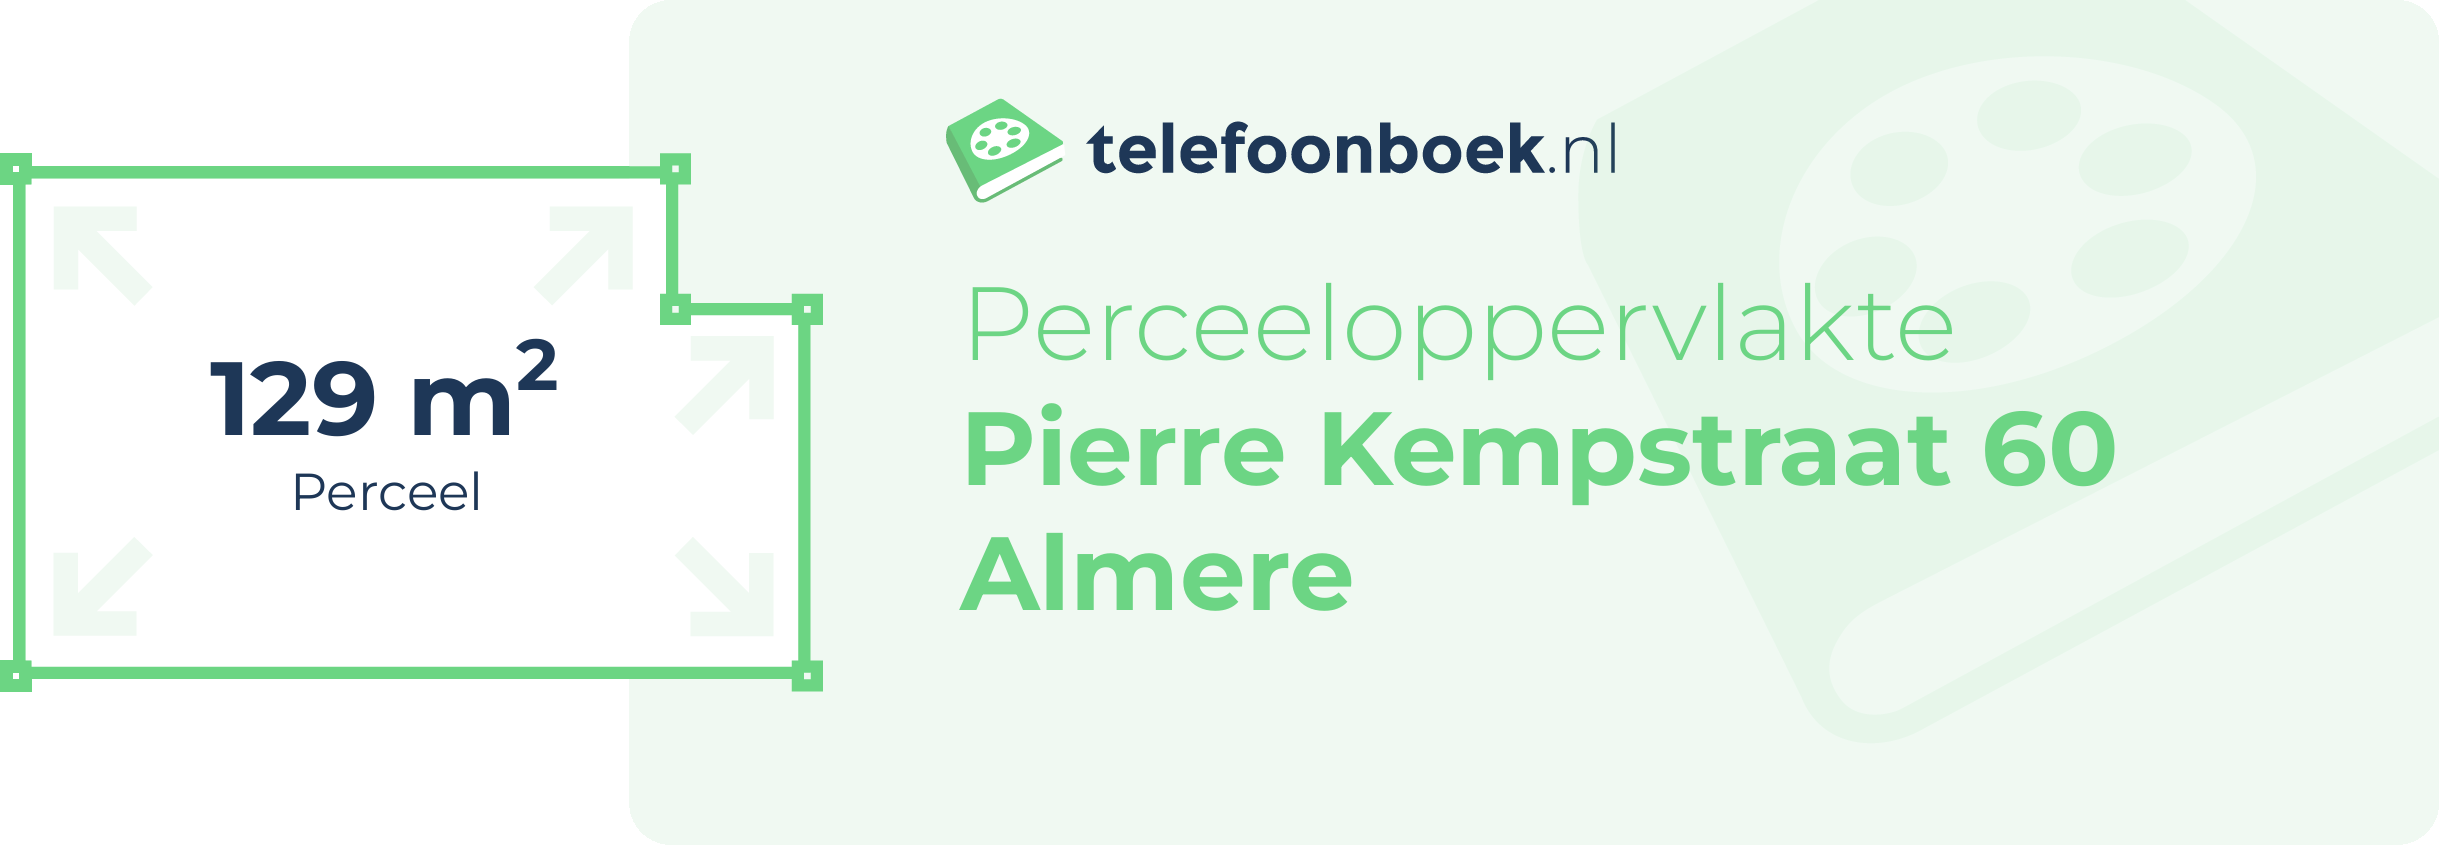 Perceeloppervlakte Pierre Kempstraat 60 Almere